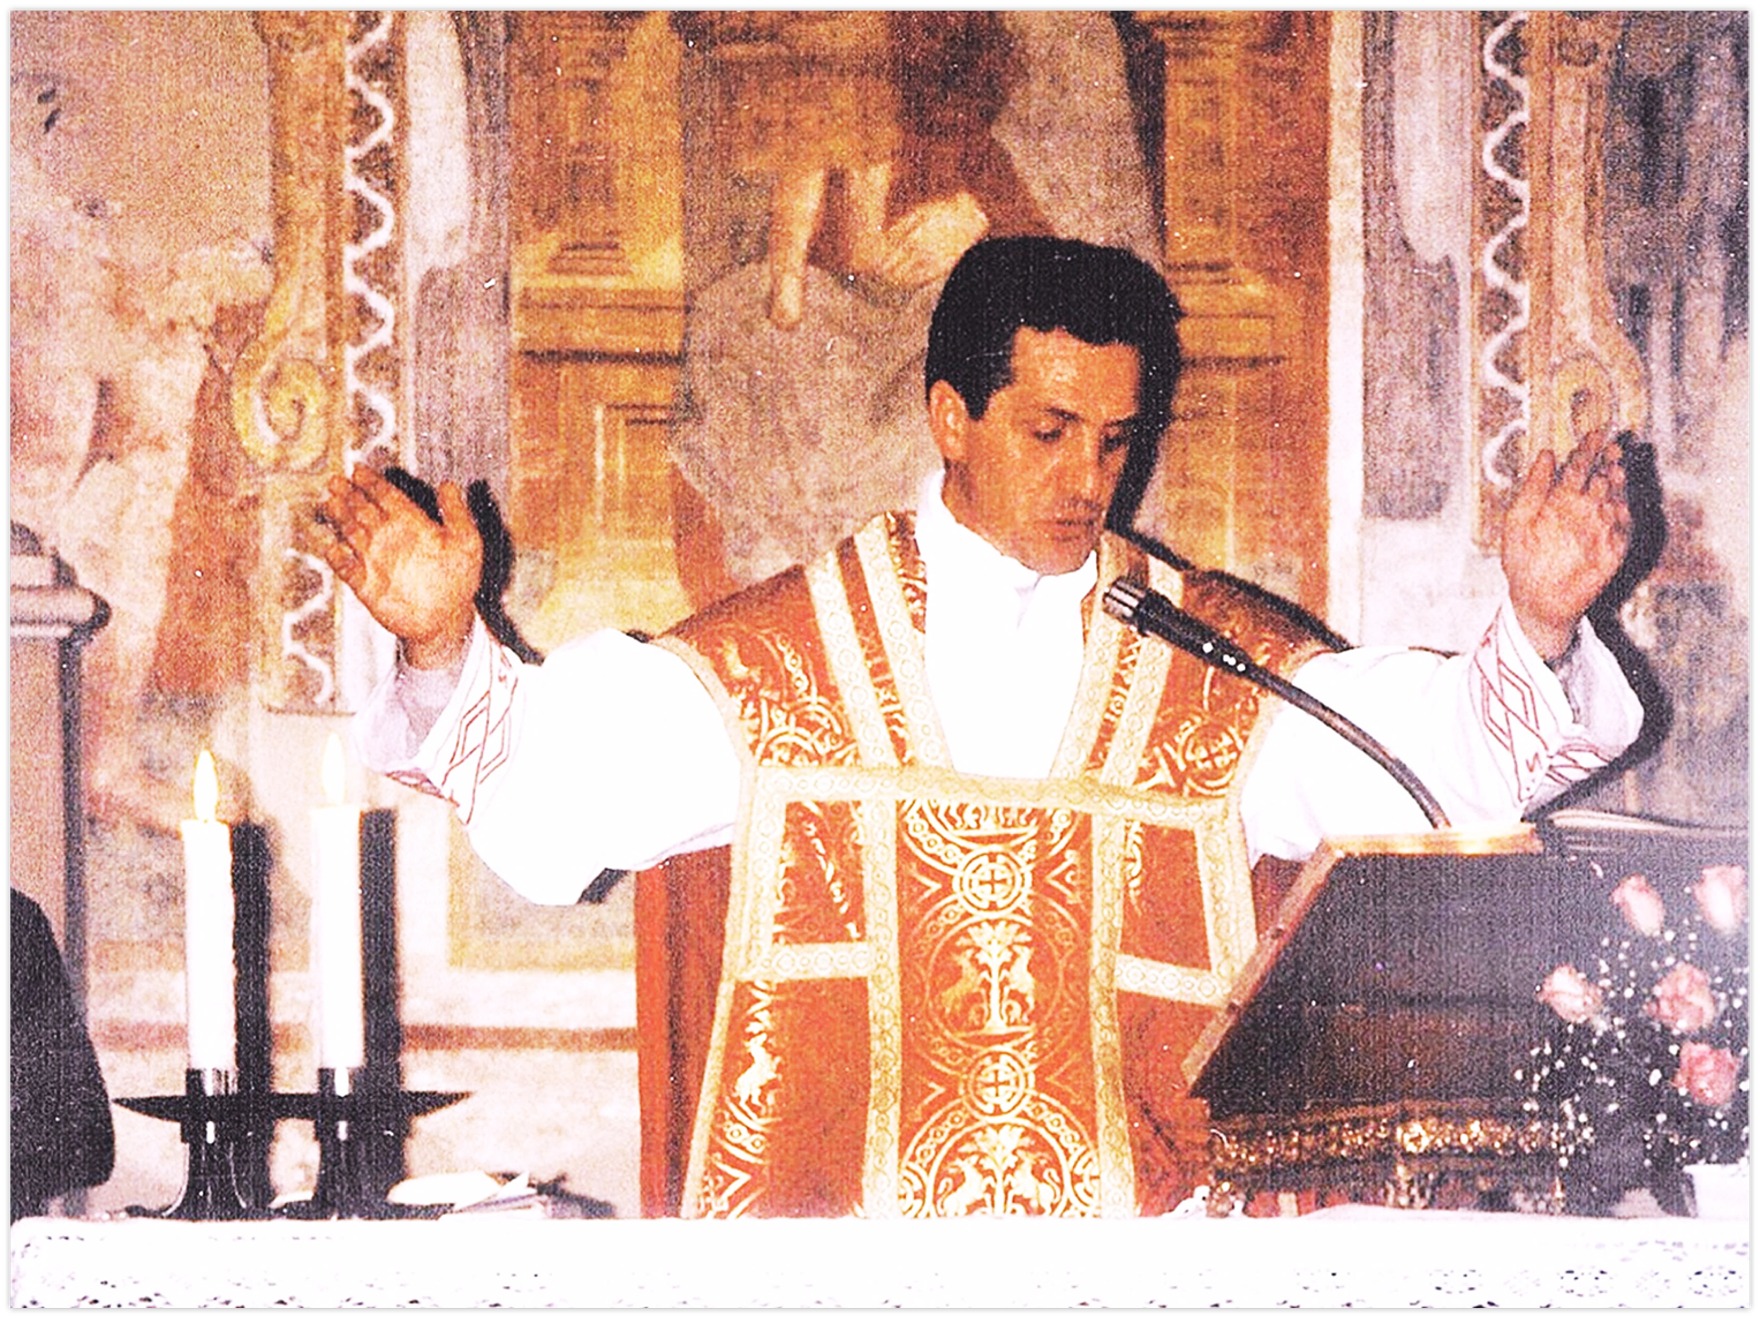 Prima Messa di Padre Gianni Venturini nella chiesa di Varigione in San Giovanni di Lecco